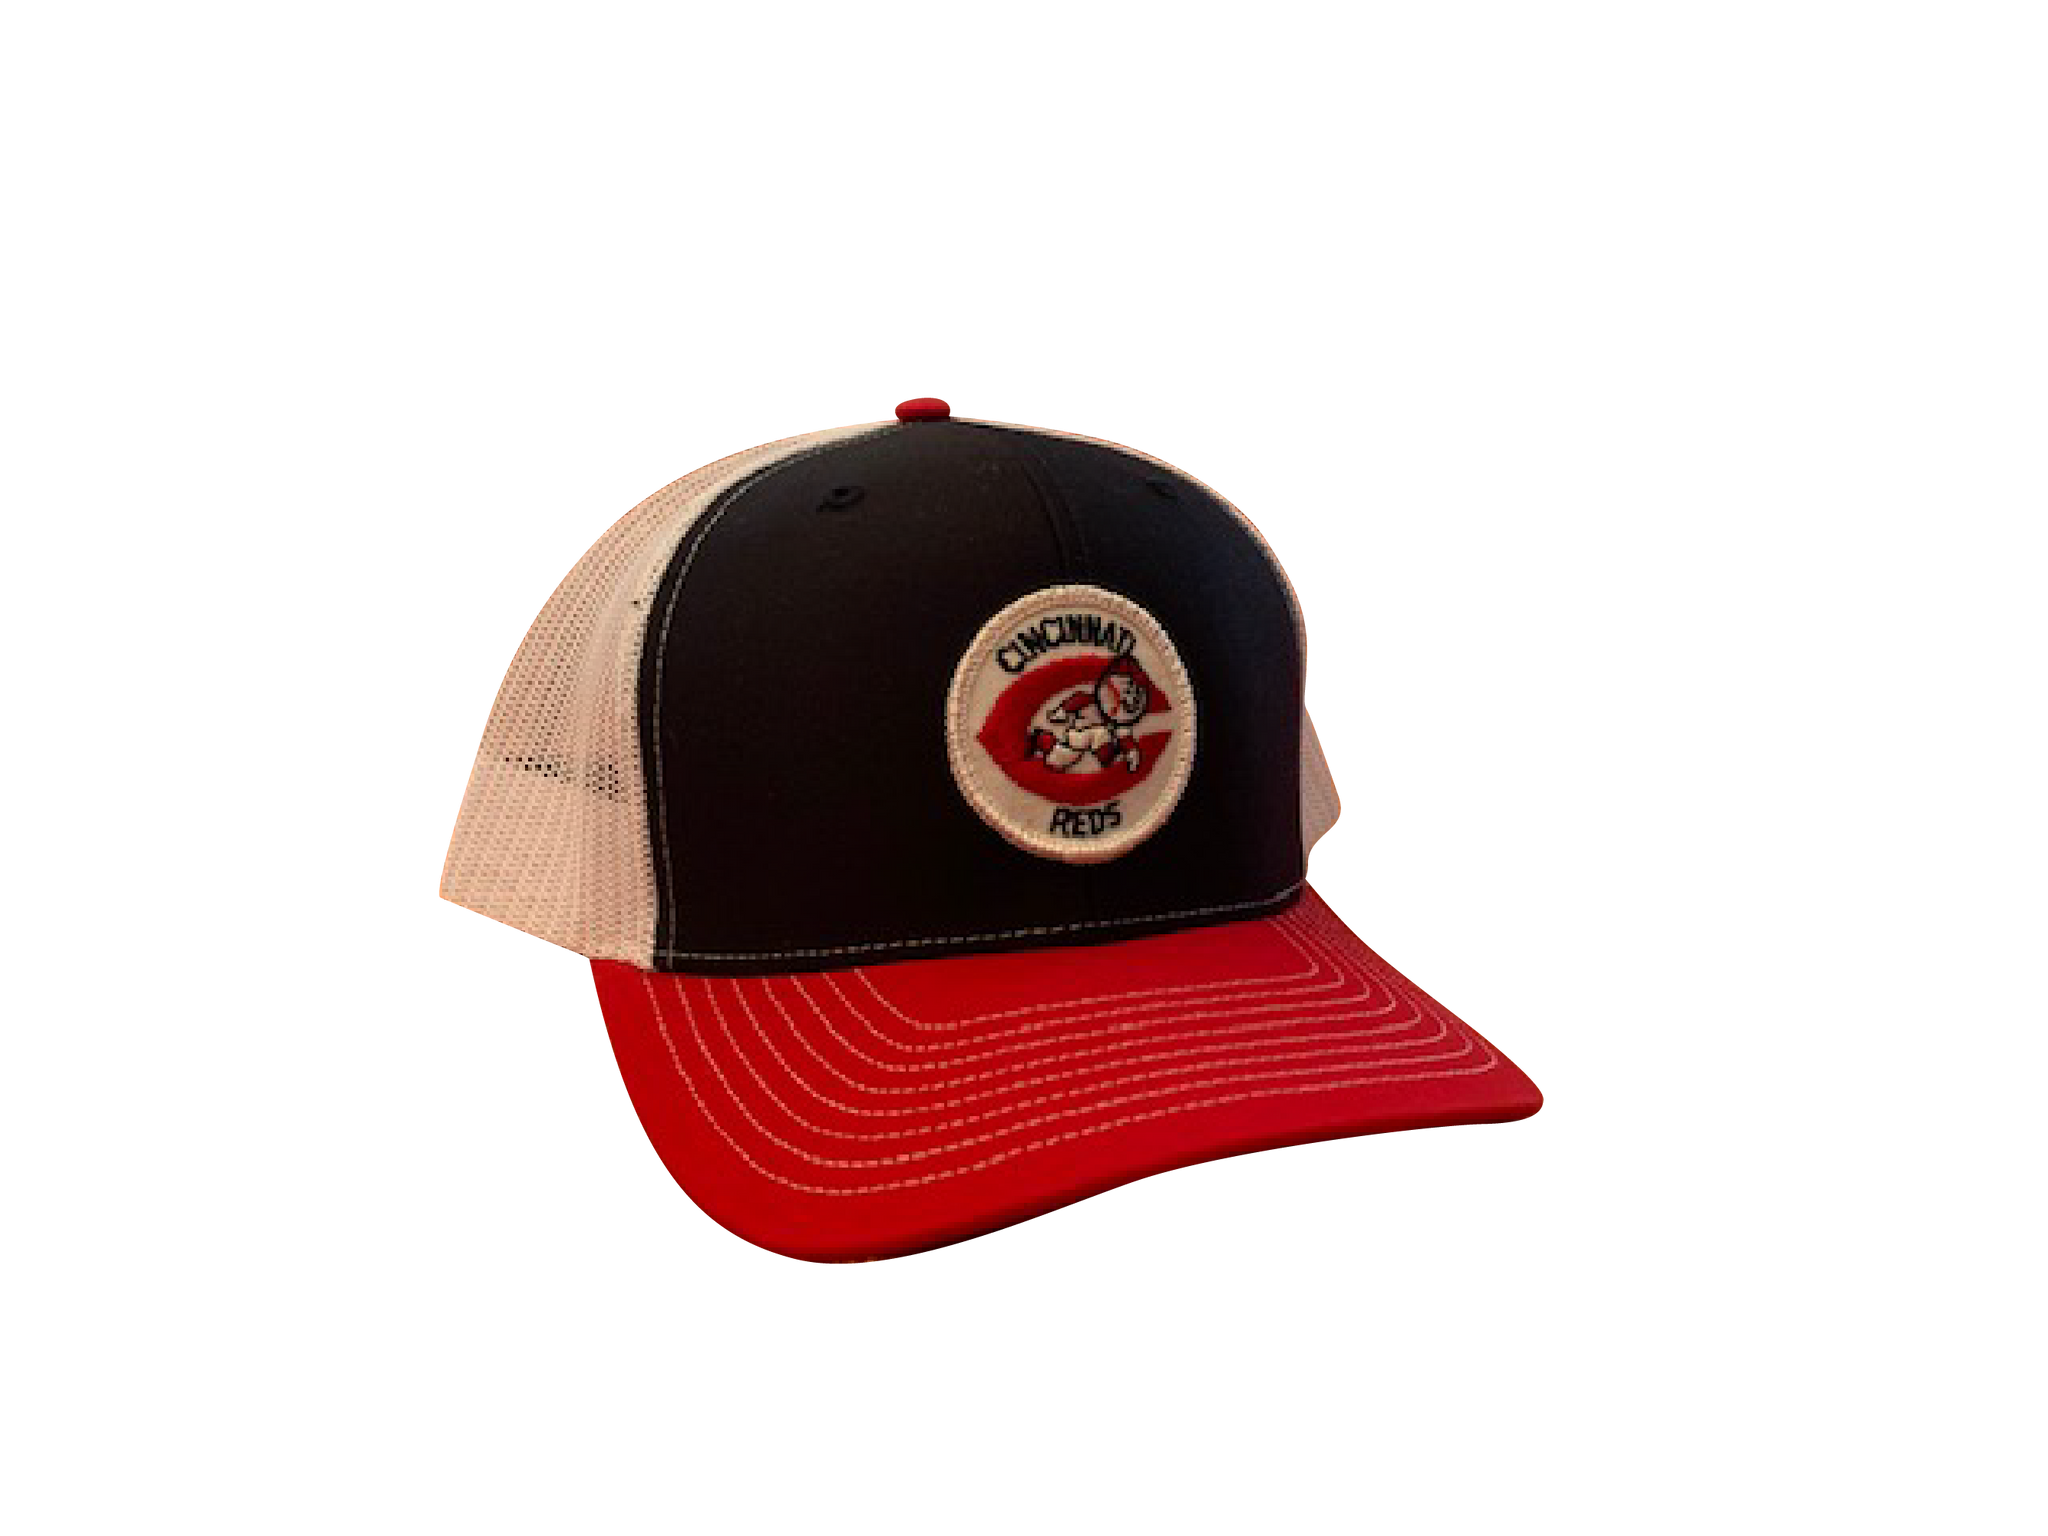 Cincinnati Reds Patch Trucker Cap - Black/Red/White